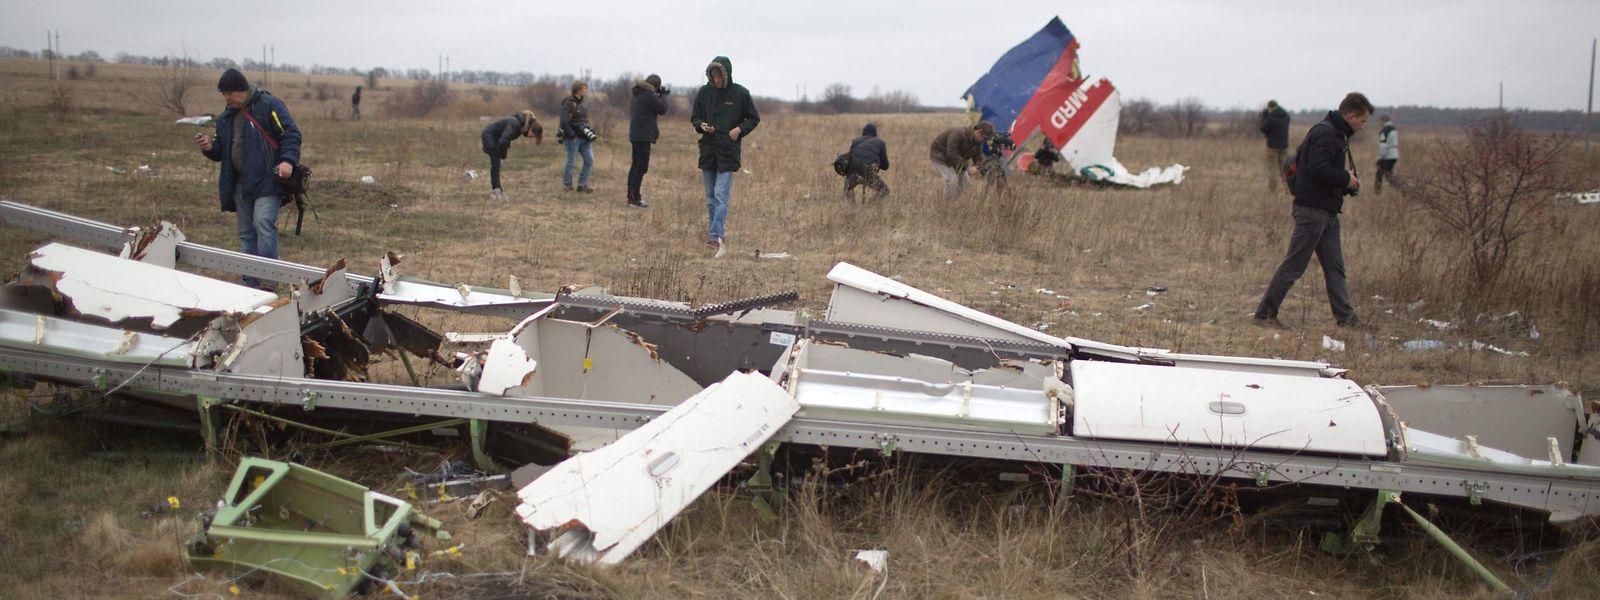 Les débris de l'avion abattu, le 11 novembre 2014, dans l'est de l'Ukraine.